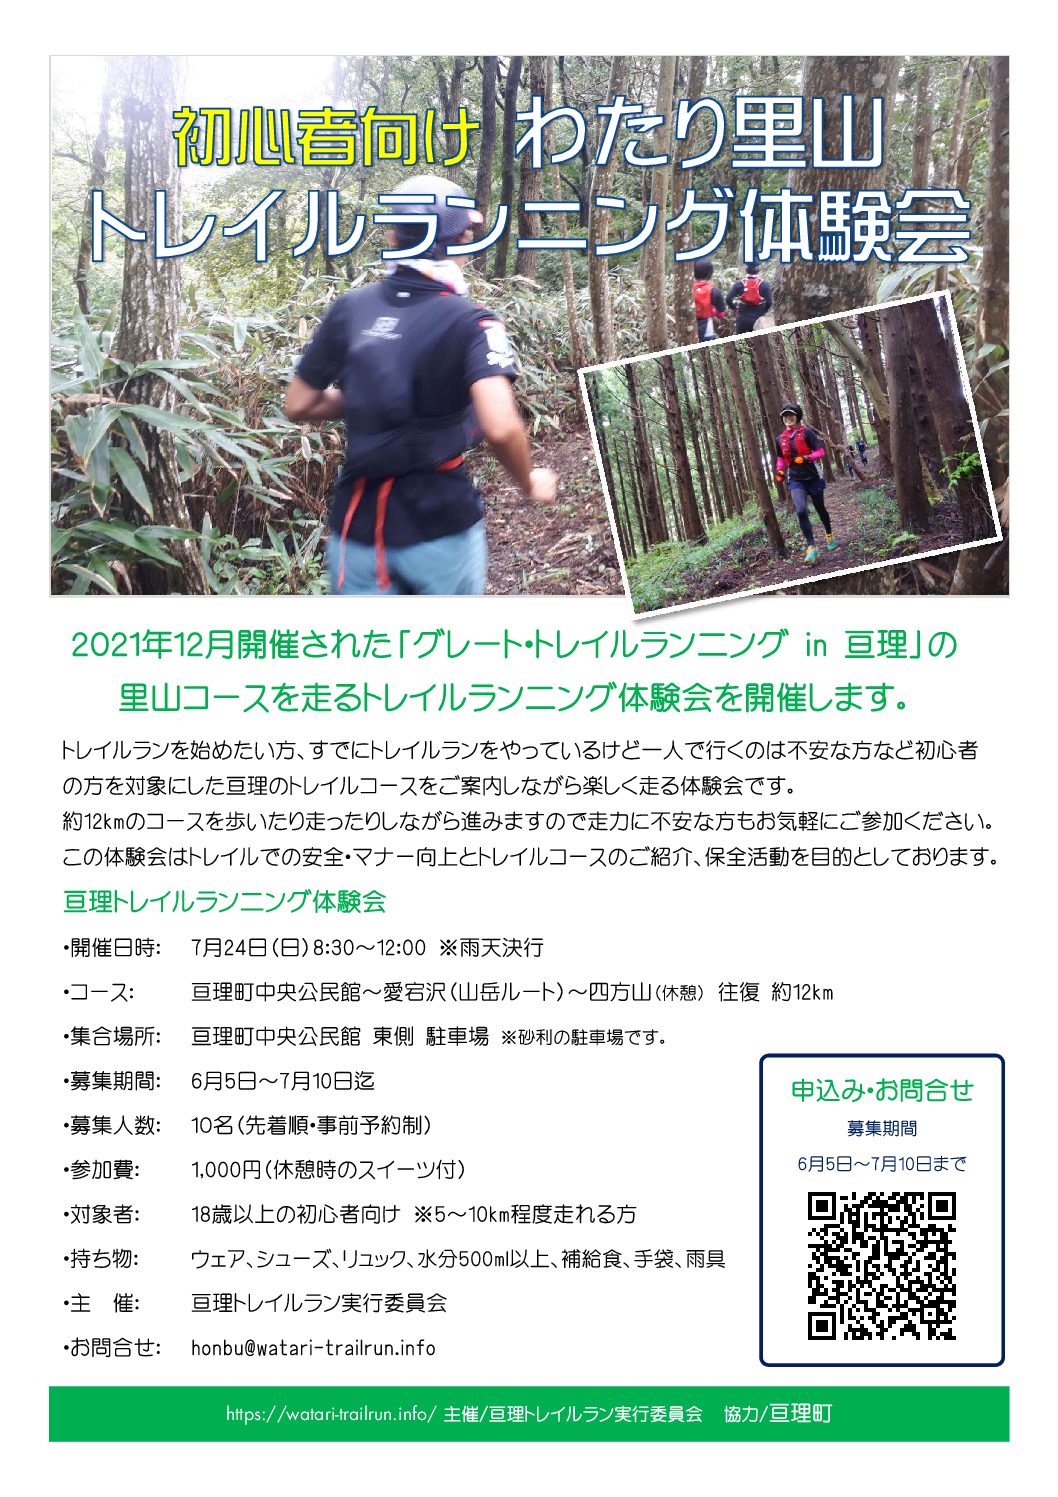 7月24日 日 初心者向け わたり里山トレイルランニング体験会開催 亘理トレイルランニング大会